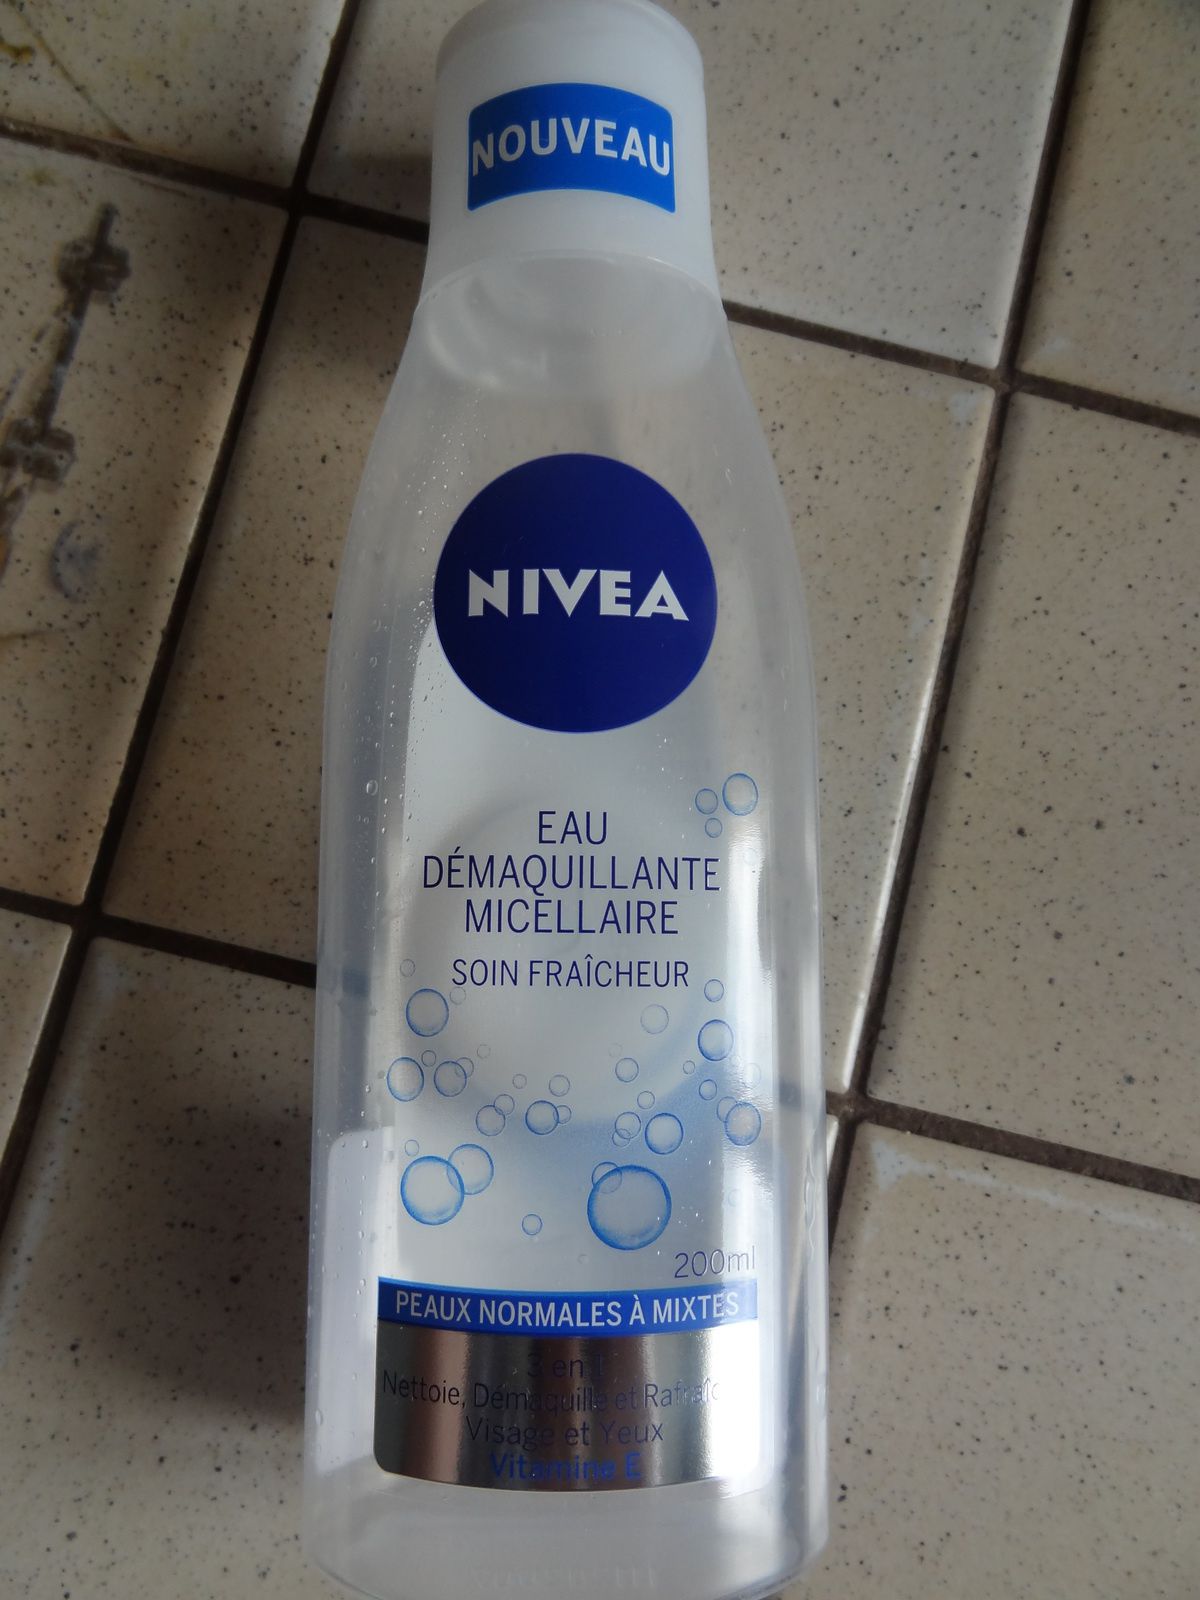 eau micellaire fraicheur nivea